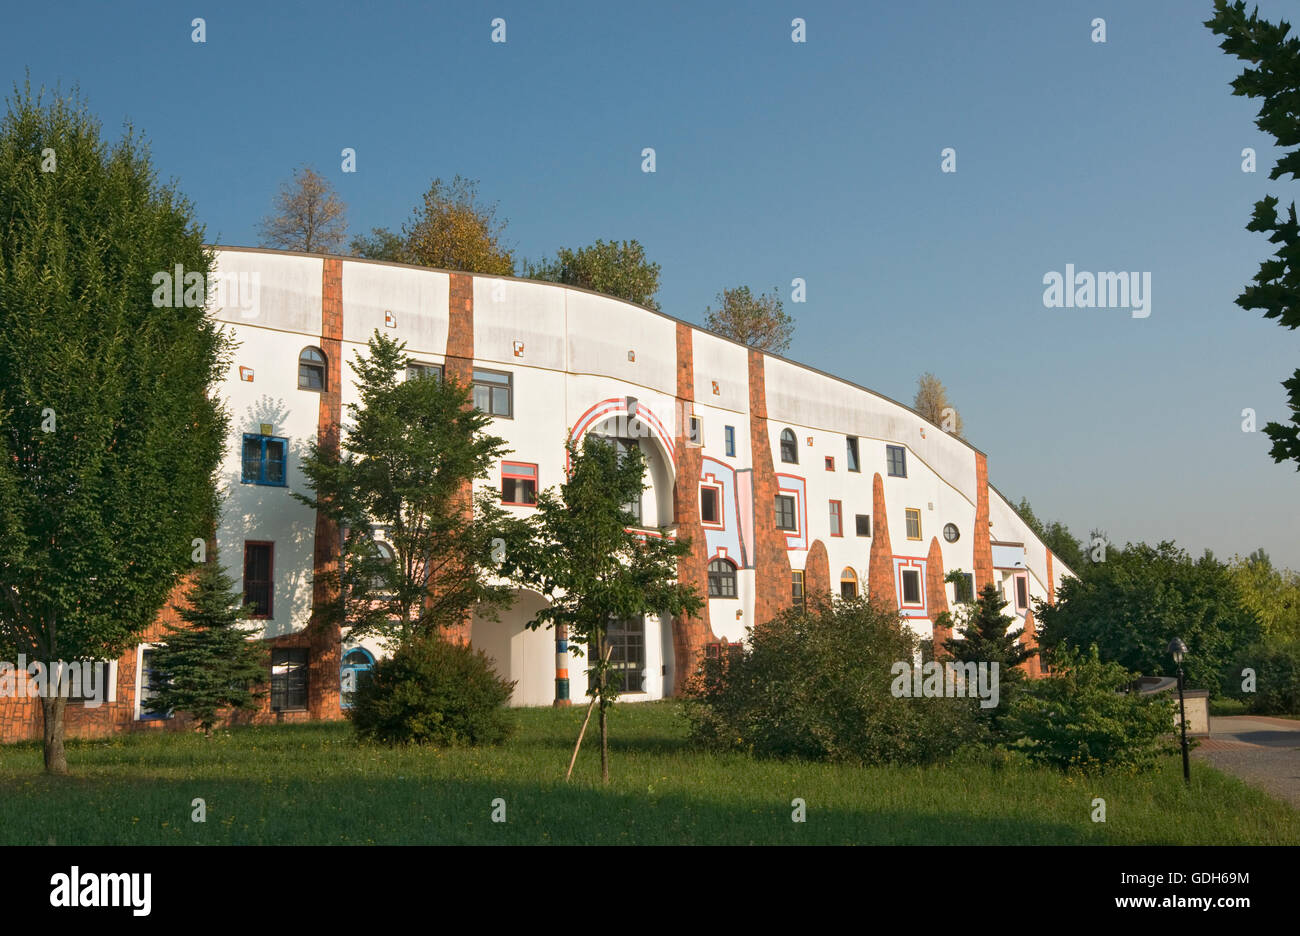 Ziegelhaus, Brick House of the Rogner Bad Blumau hotel complex, designed by architect Friedensreich Hundertwasser Stock Photo